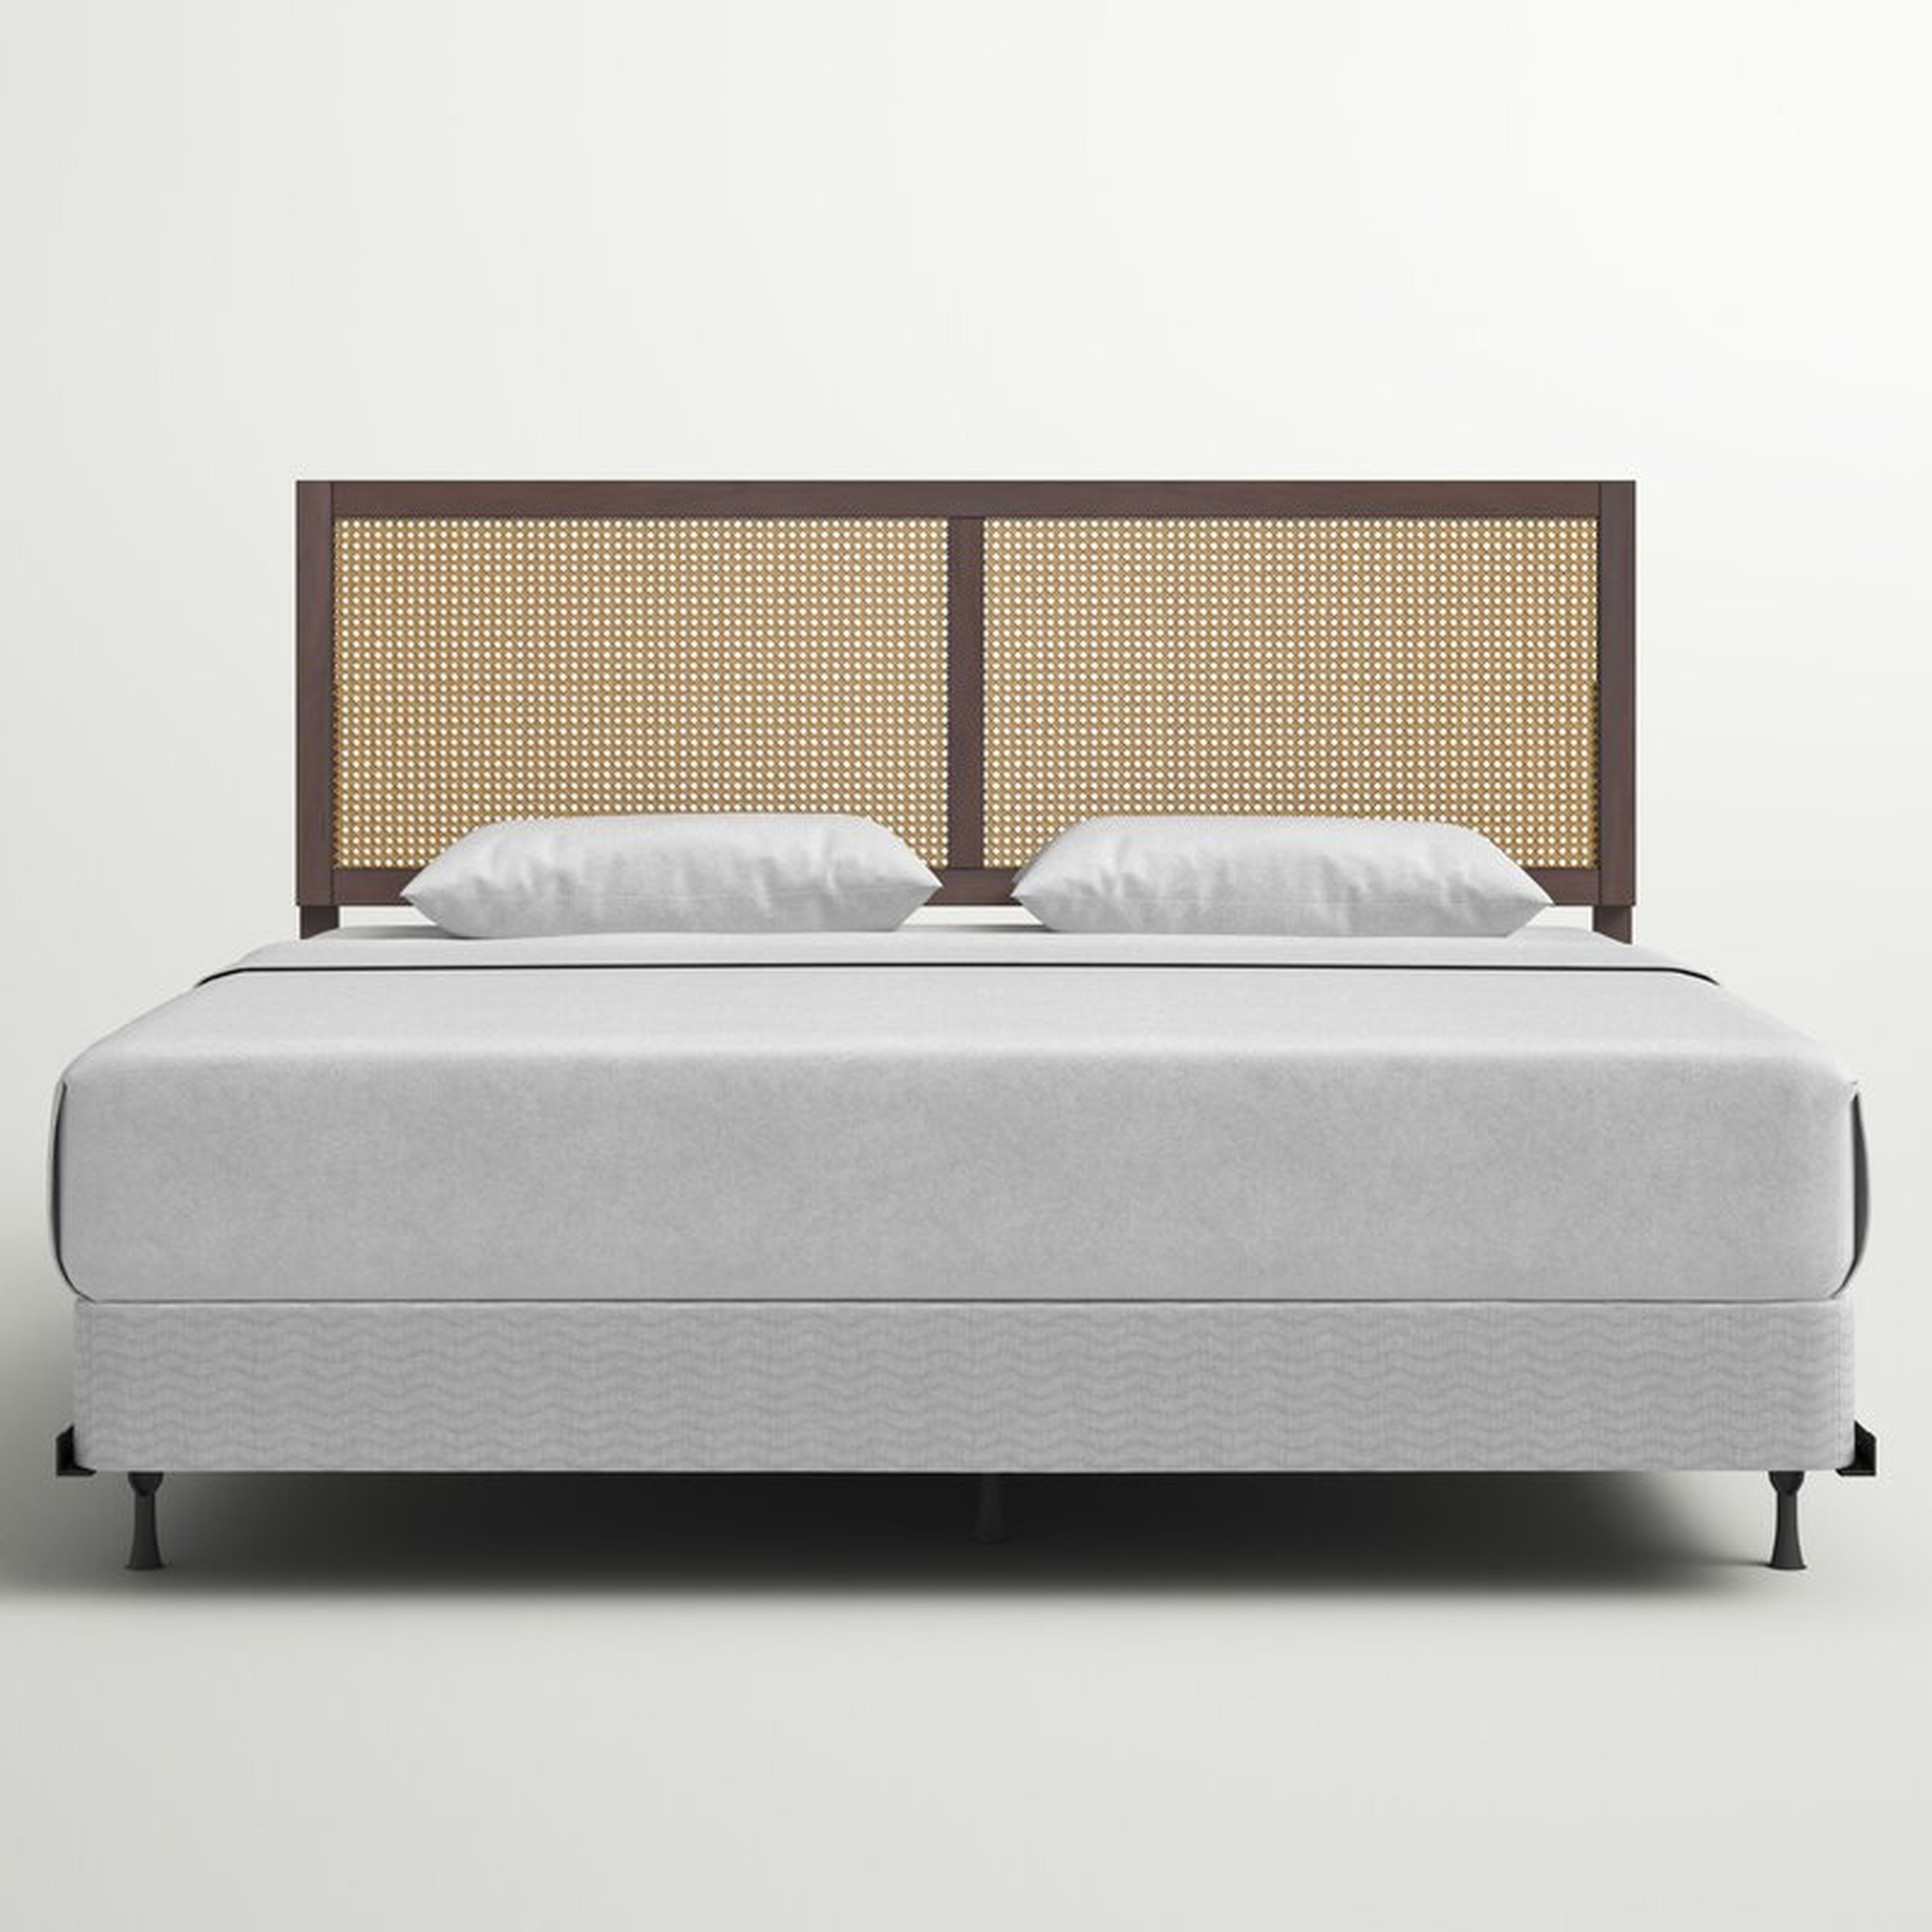 Sowers Low Profile Standard Bed - Wayfair